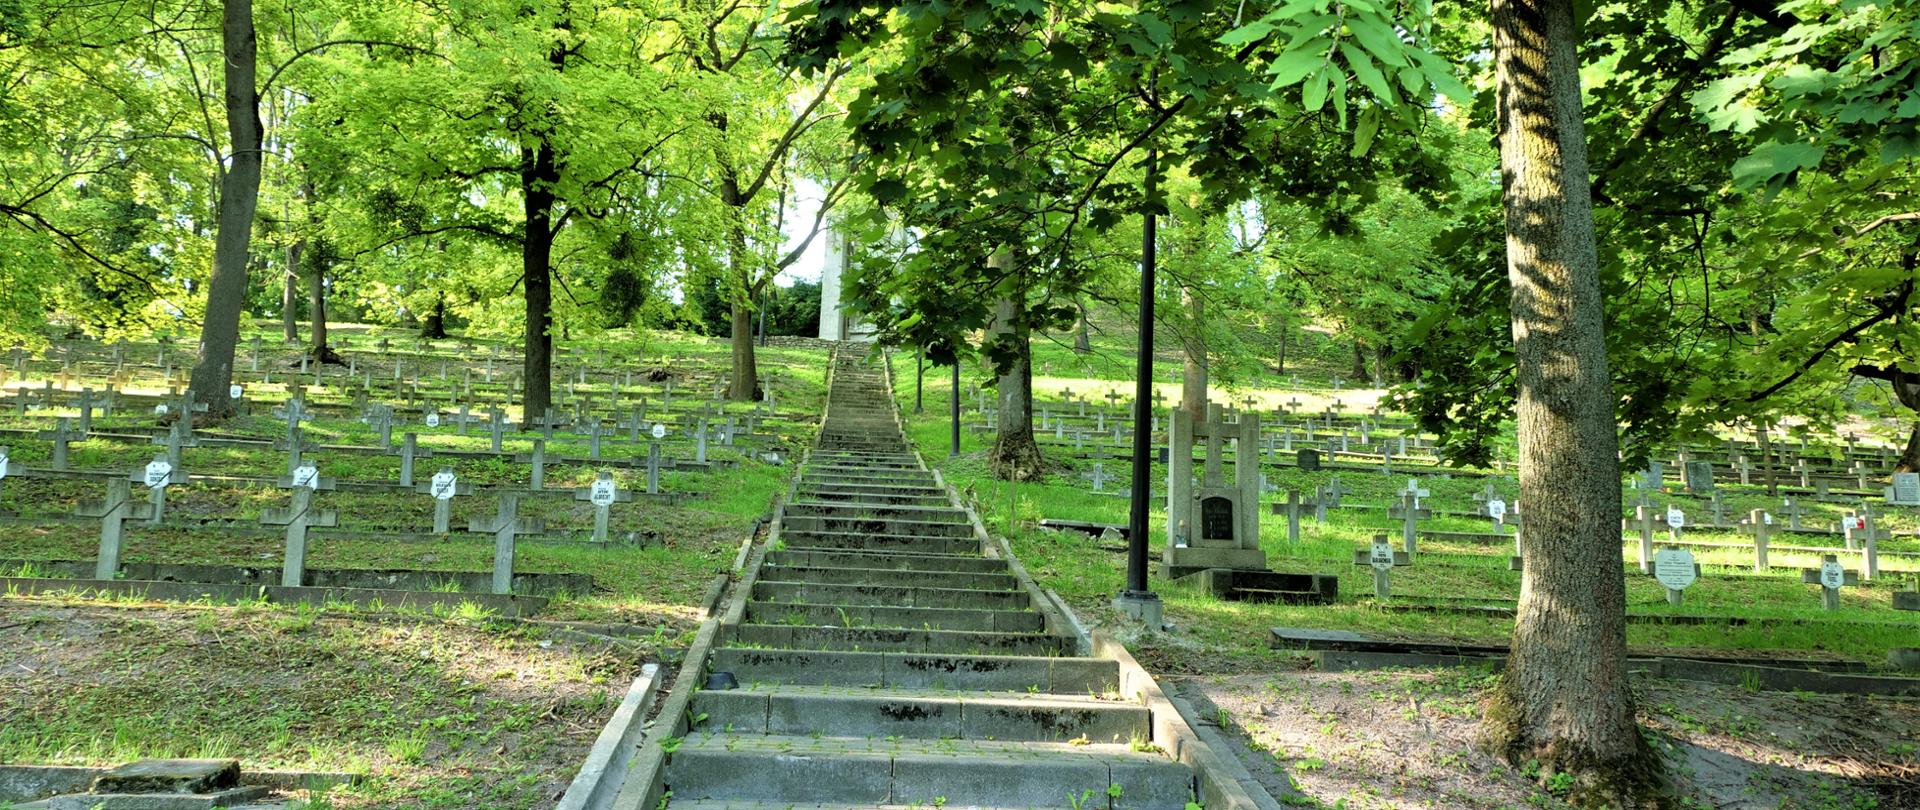 Zdjęcie przedstawia schody na cmentarzu prowadzące do umiejscowionego na górze pomnika. Dookoła rosną drzewa.